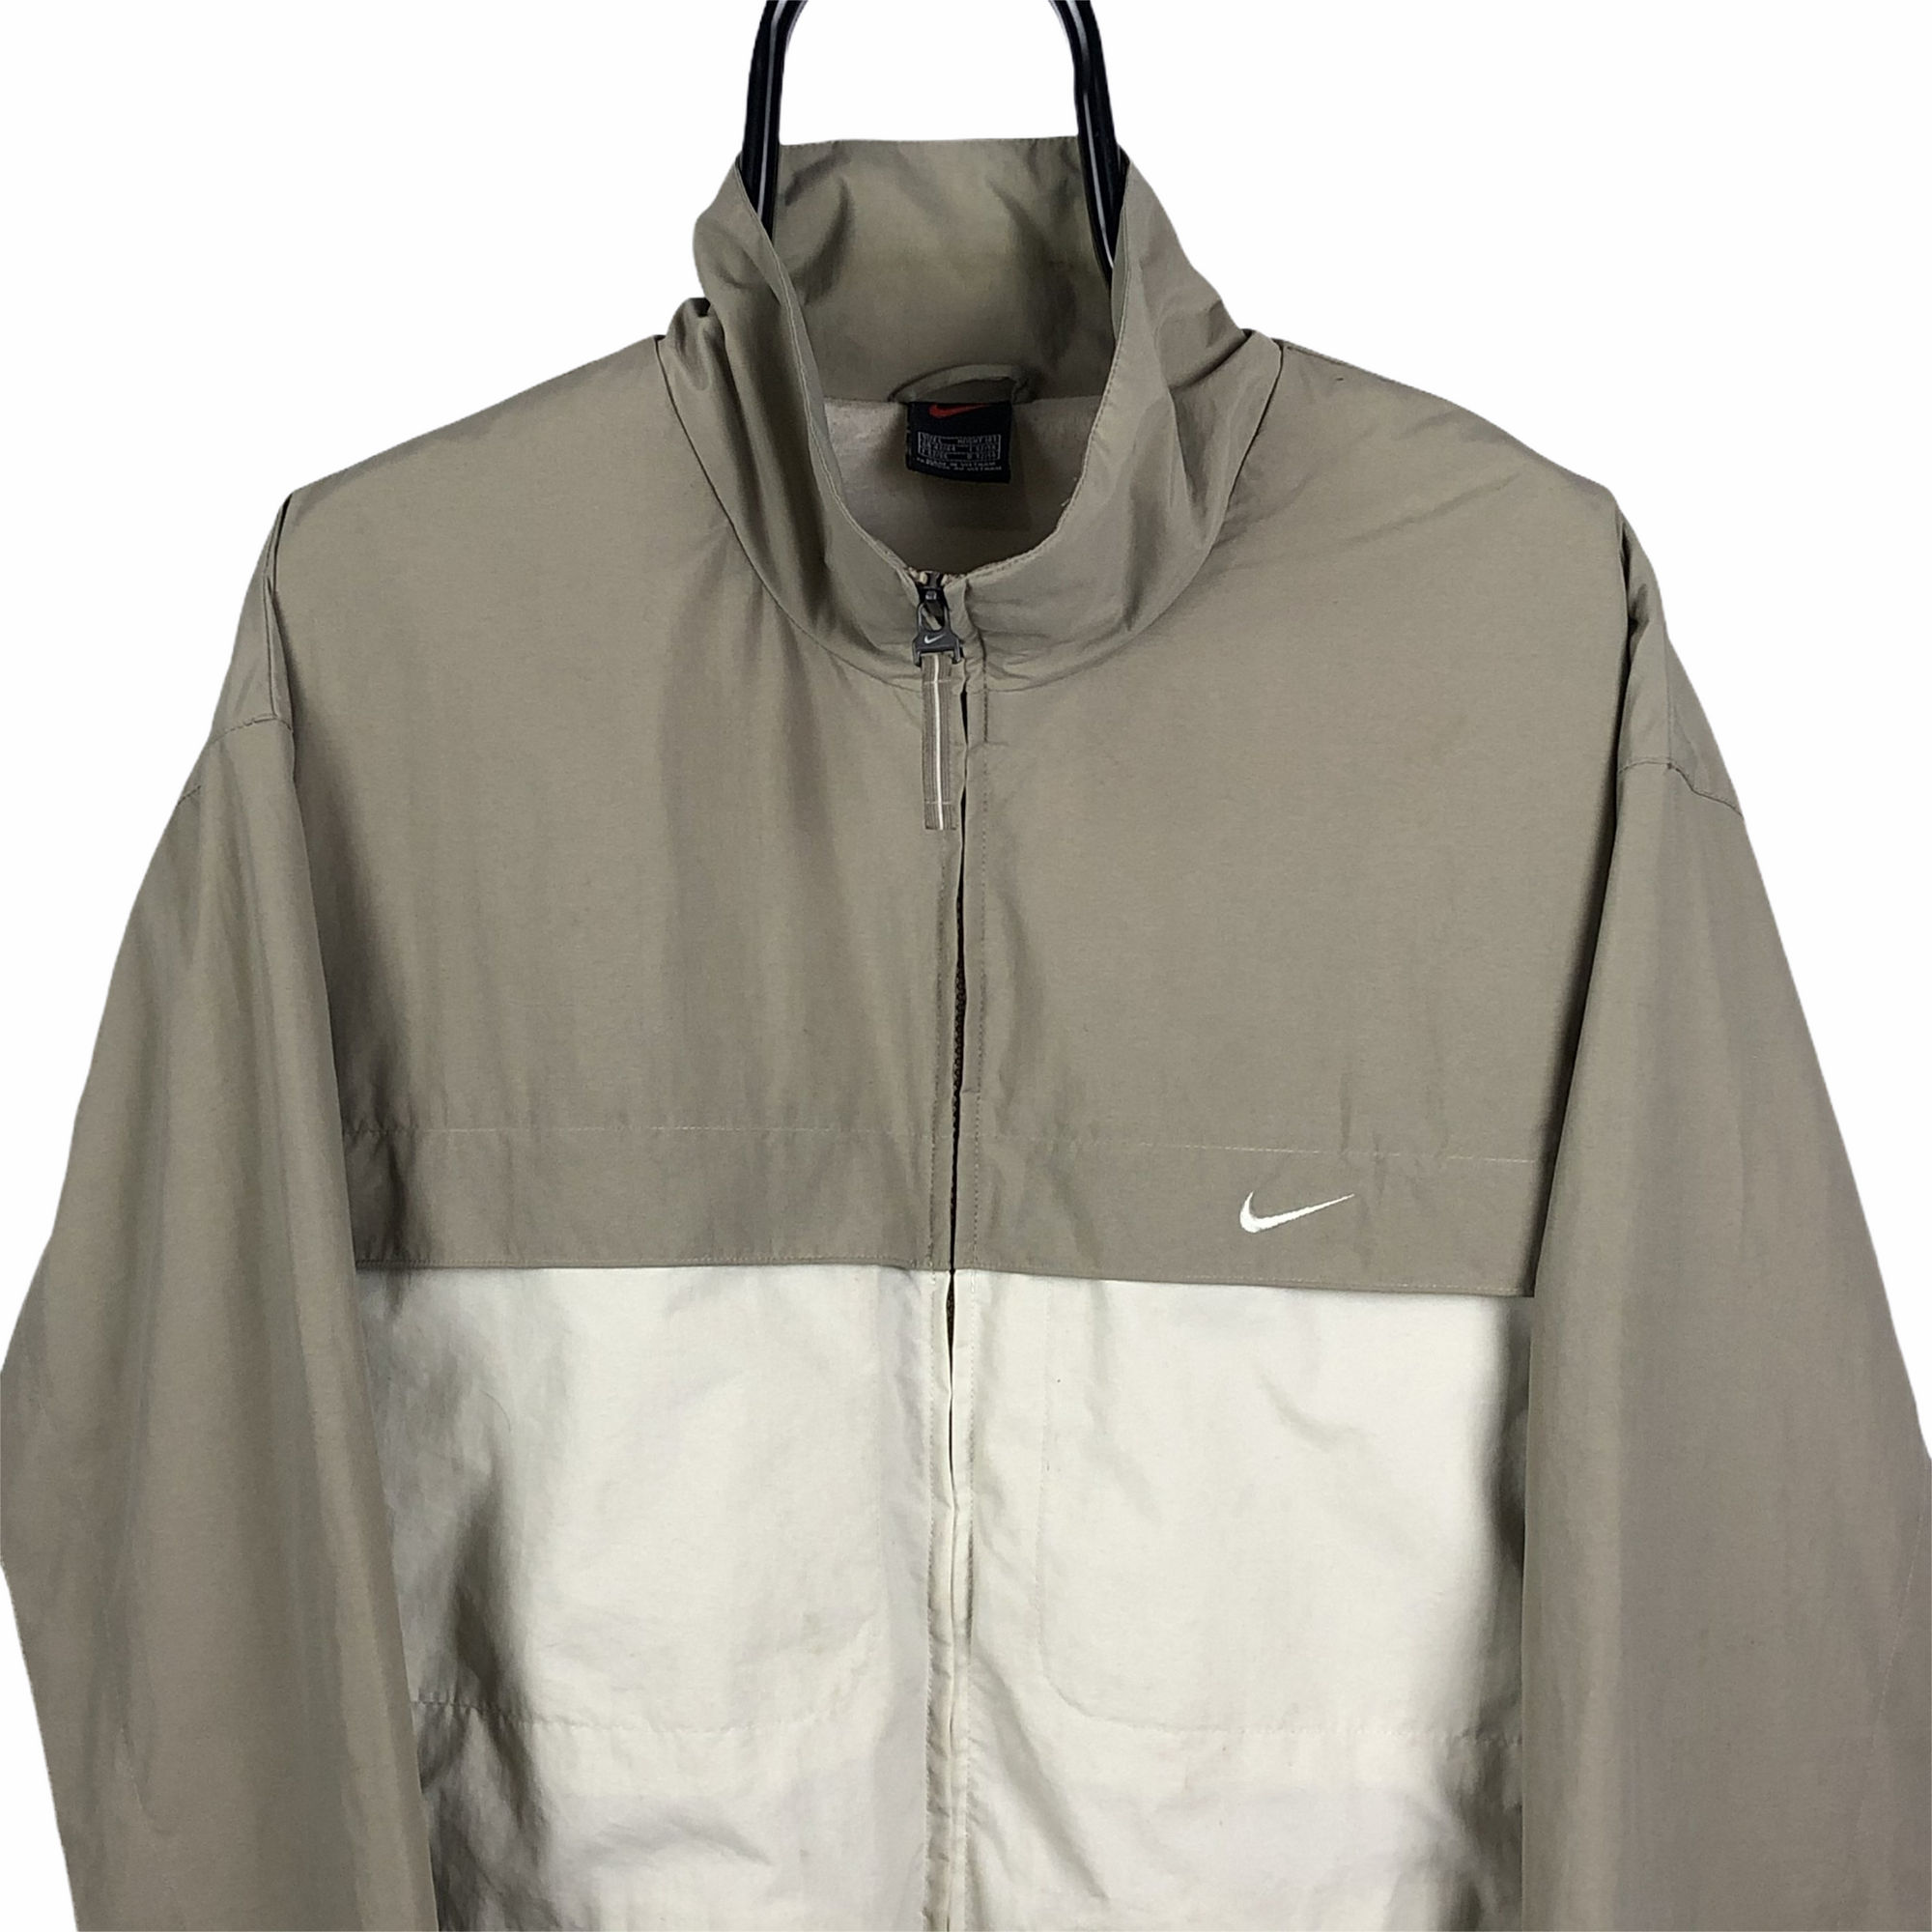 Vintage Nike Track Jacket in Beige - Men's XL/Women's XXL